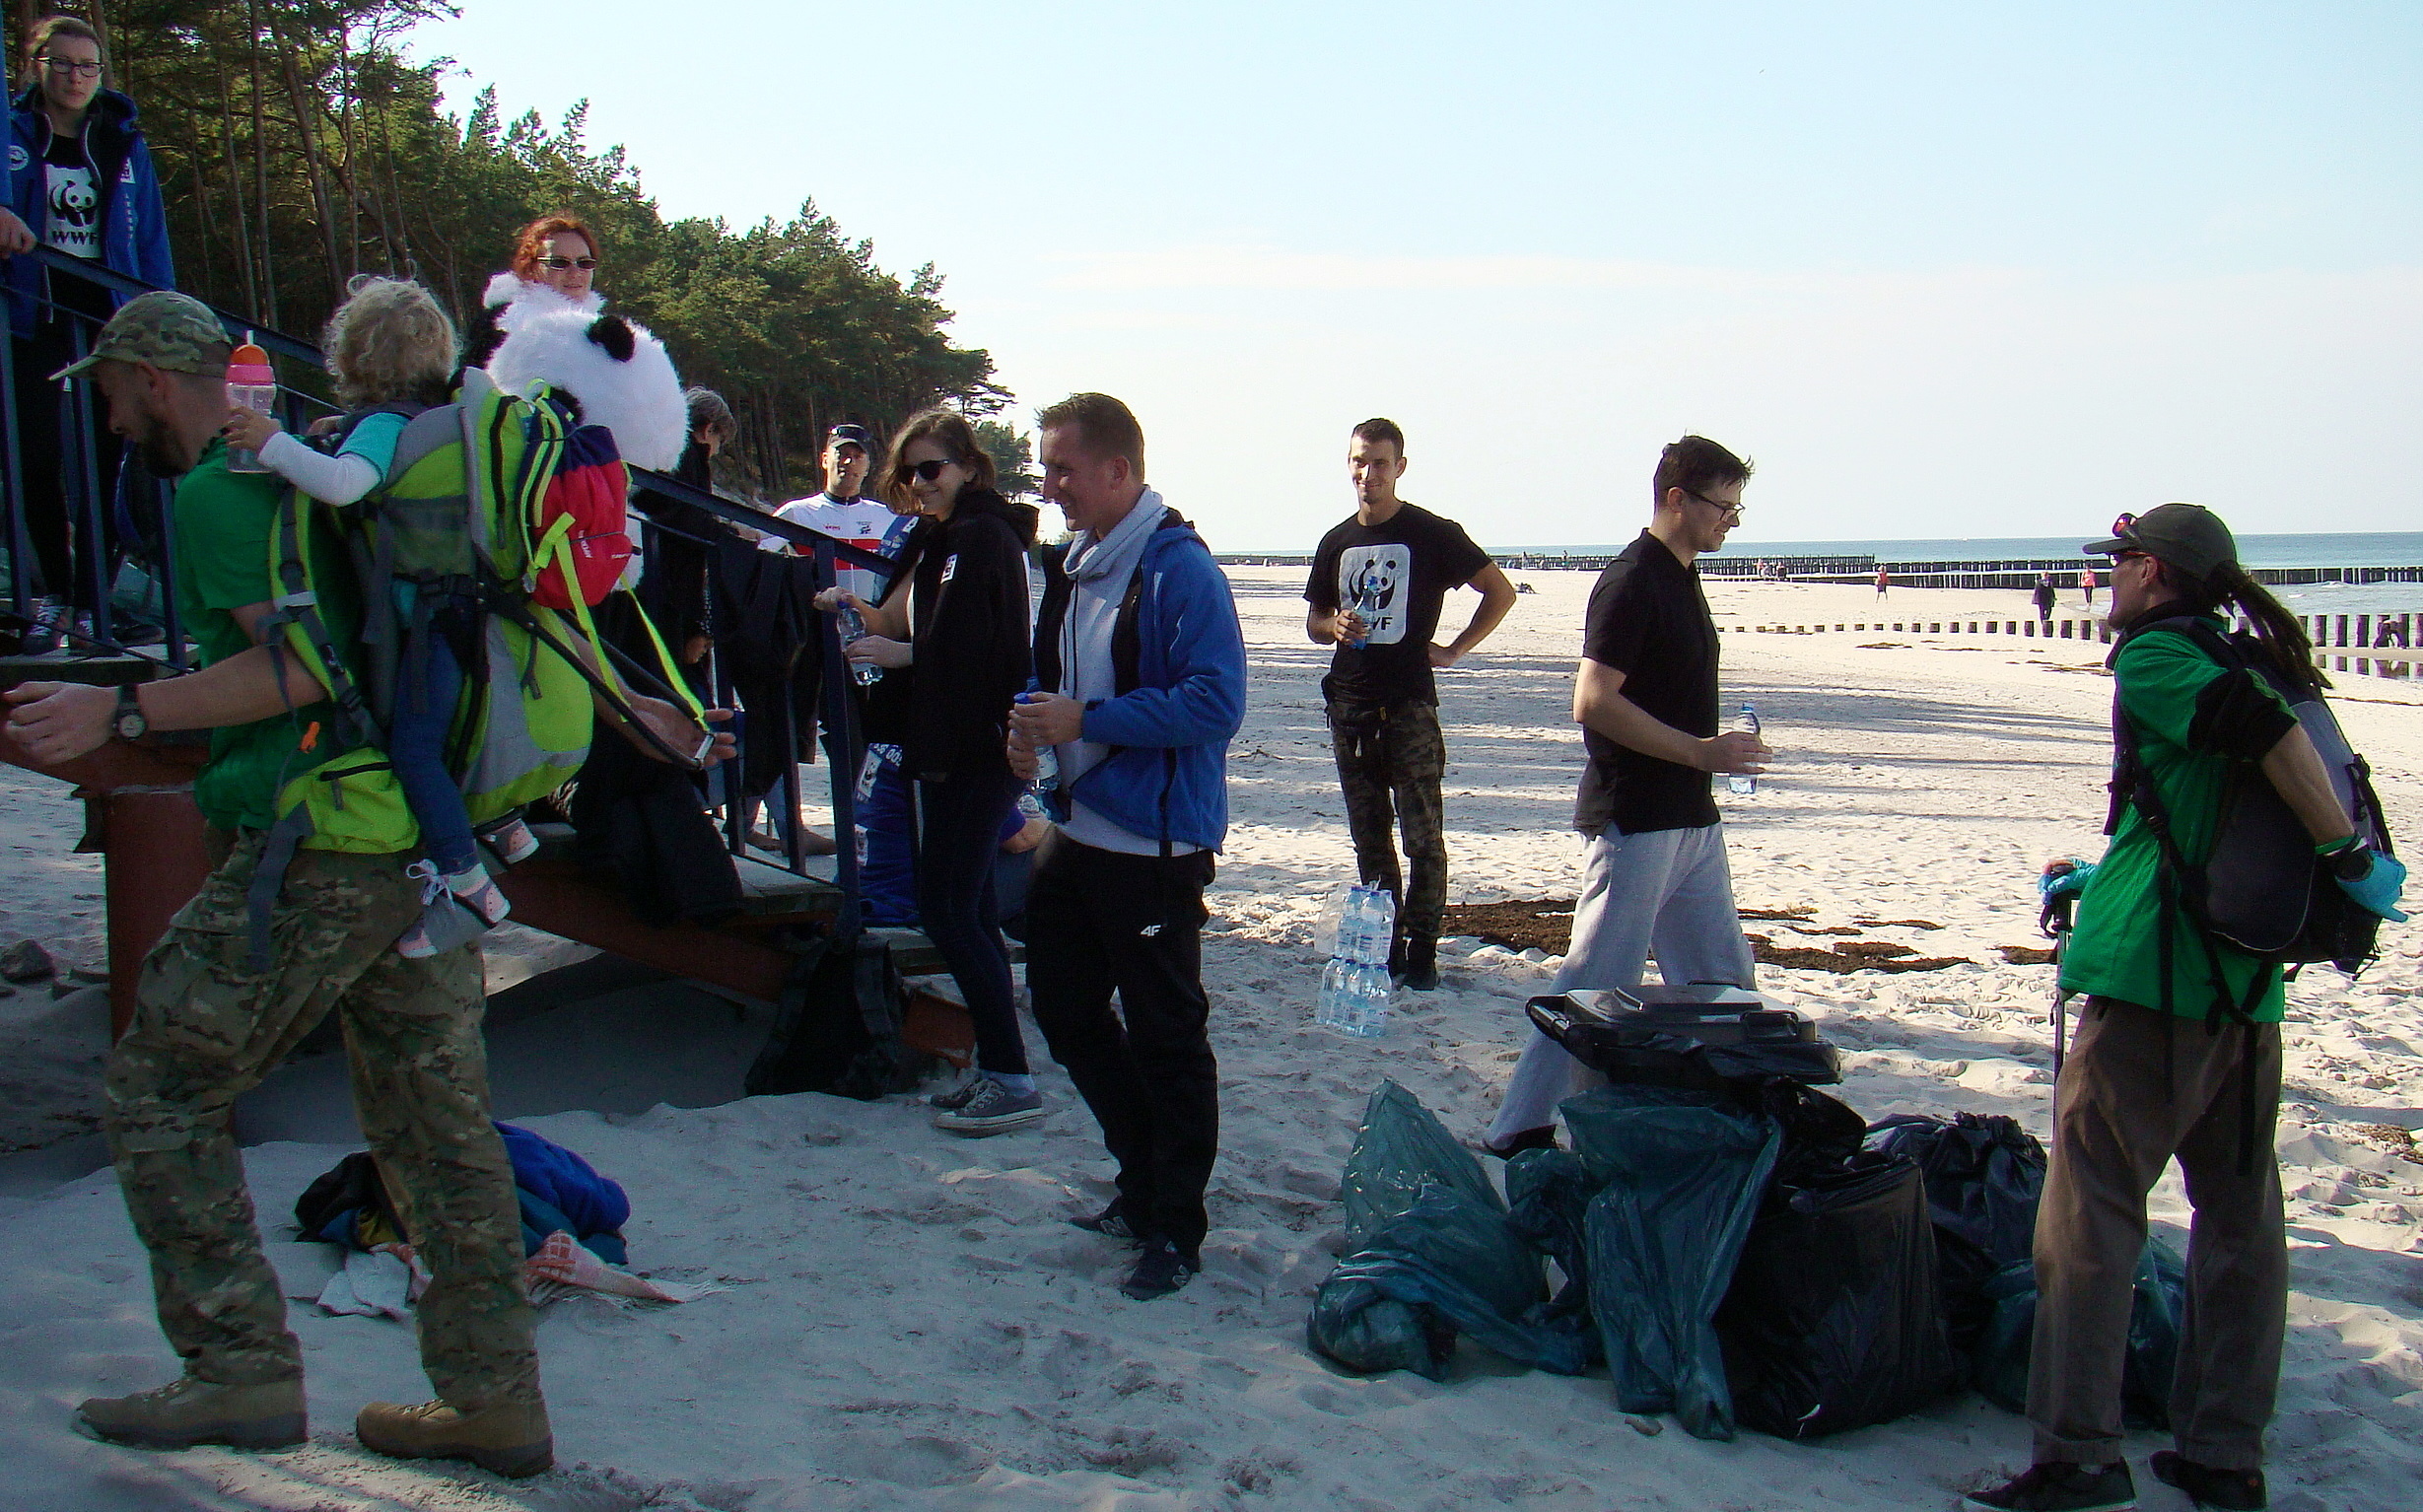 29b - Akcja "Czyste plaże" WWF Polska. Jest coraz lepiej! (+zdjęcia)